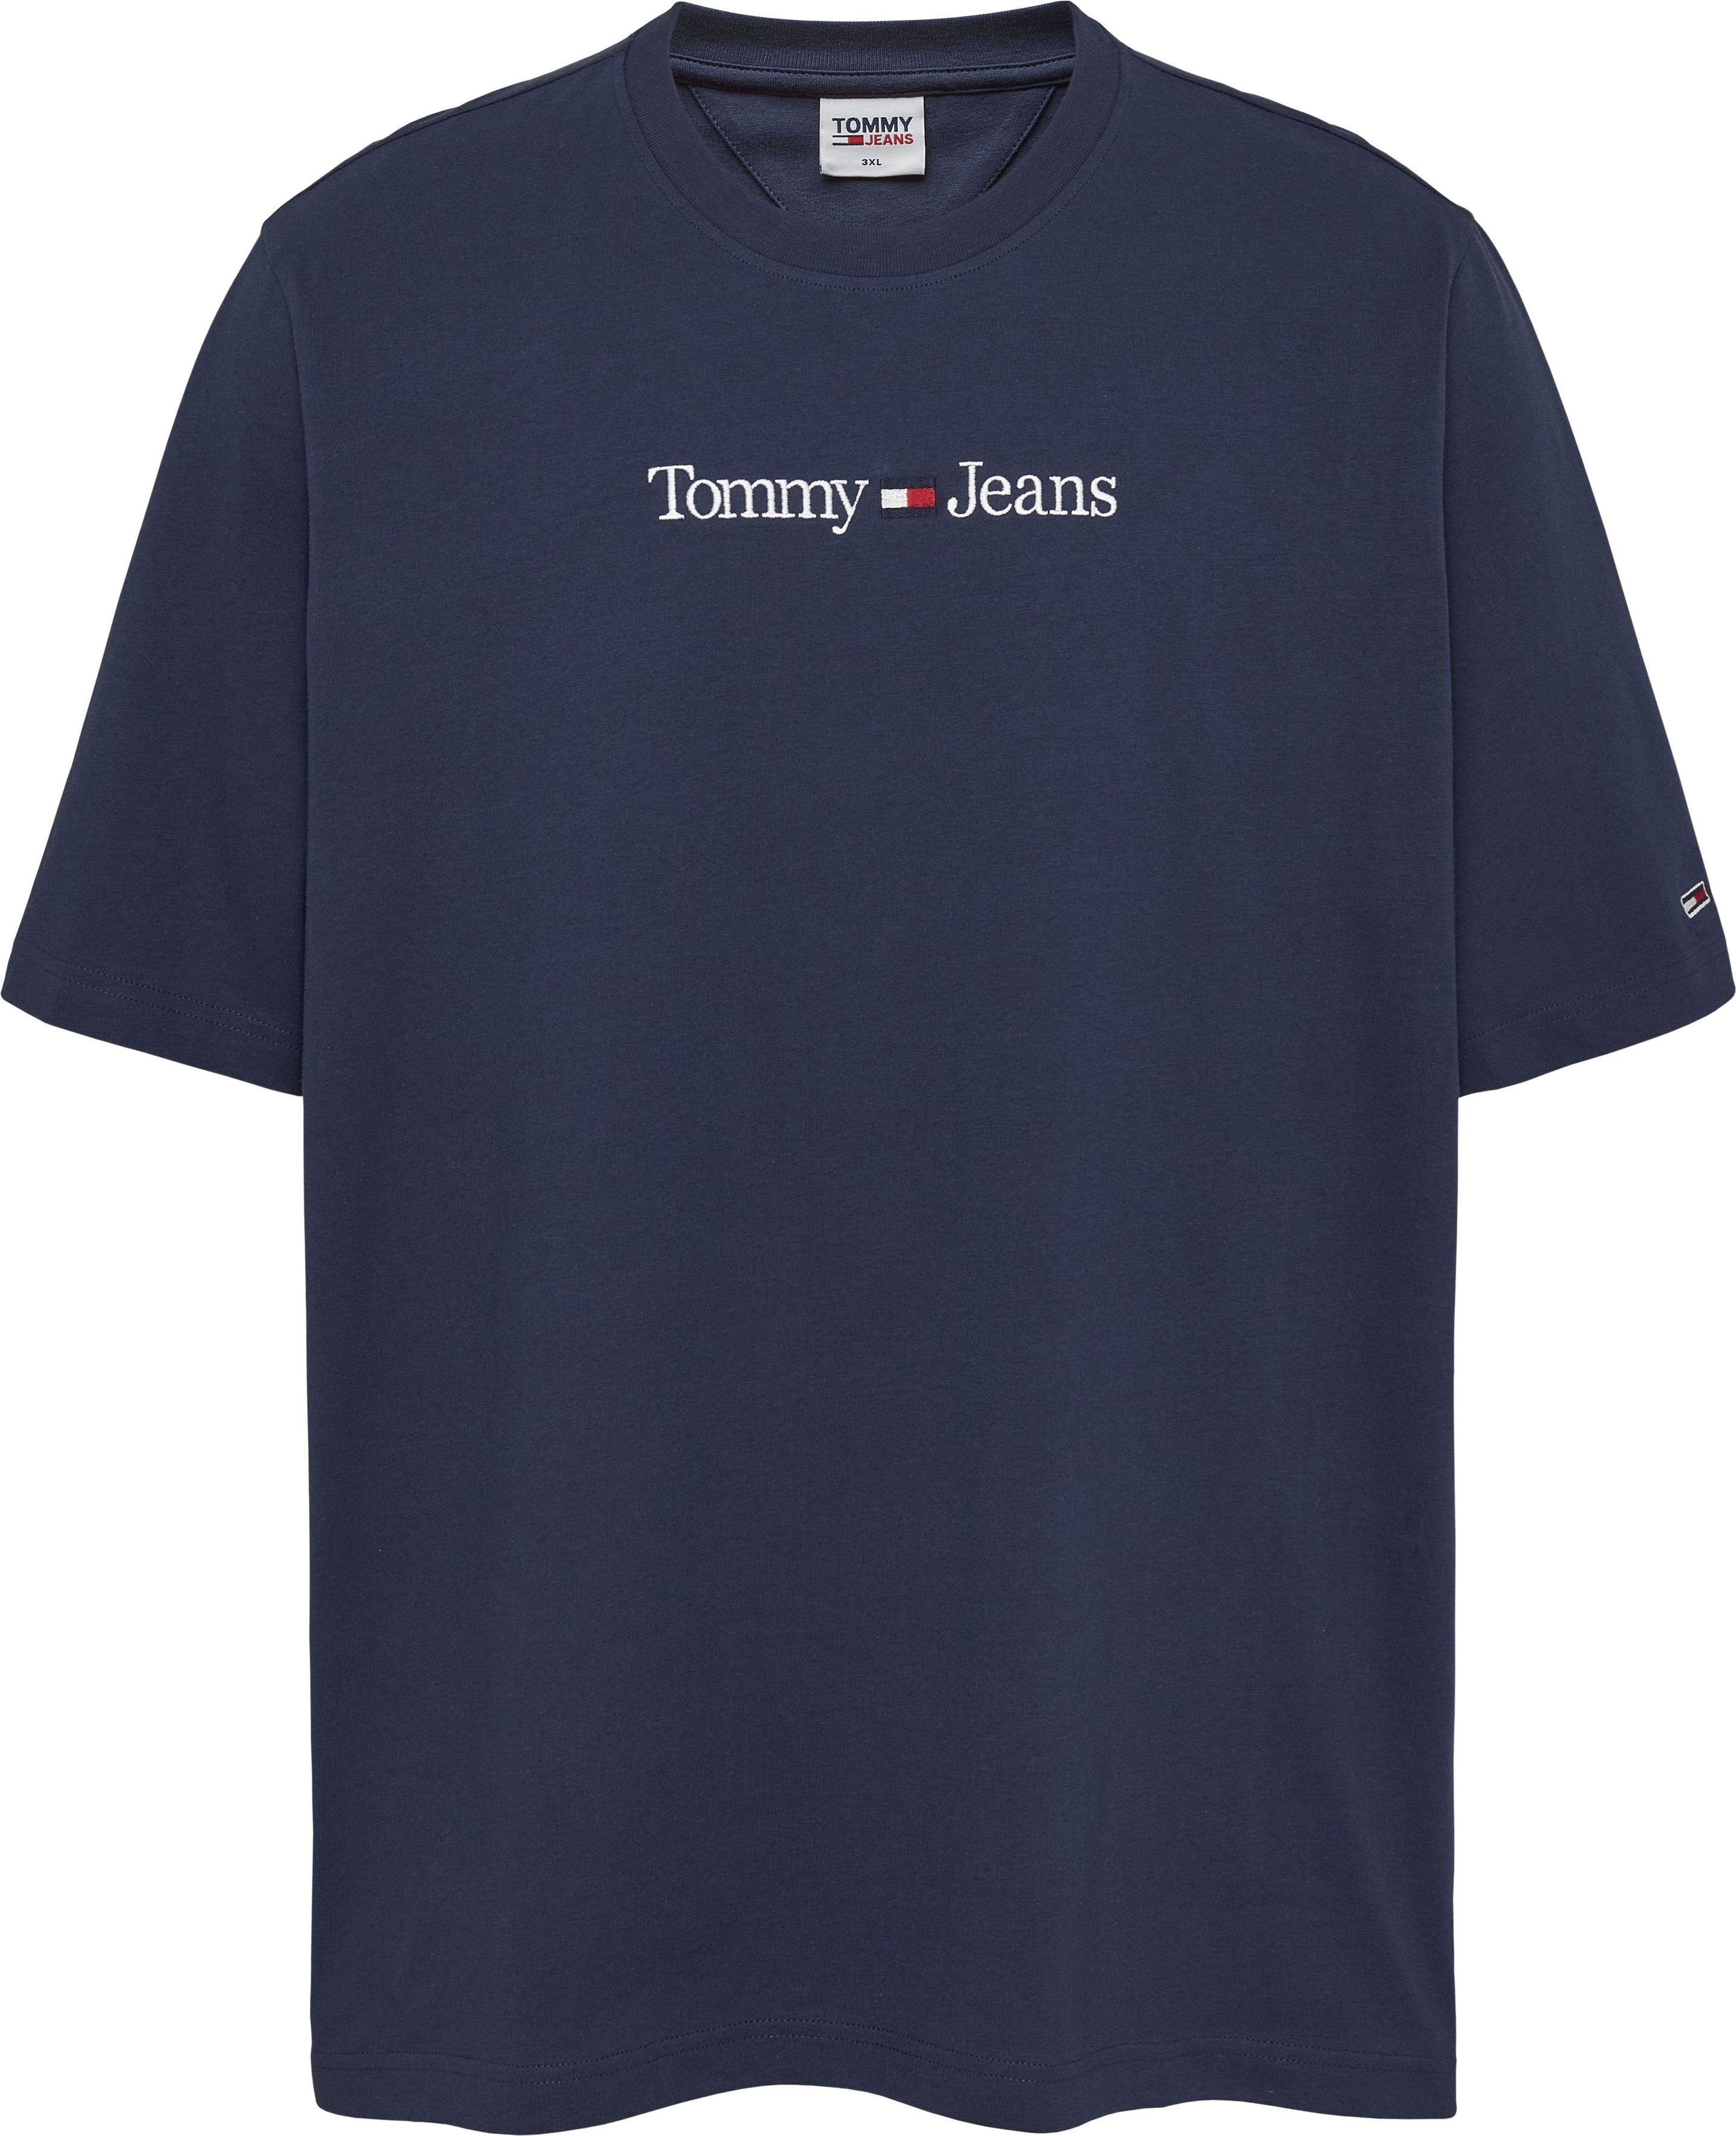 Brust Tommy-Jeans Jeans TJM T-Shirt mit der Branding LO LINEAR Plus PLUS Tommy auf navy